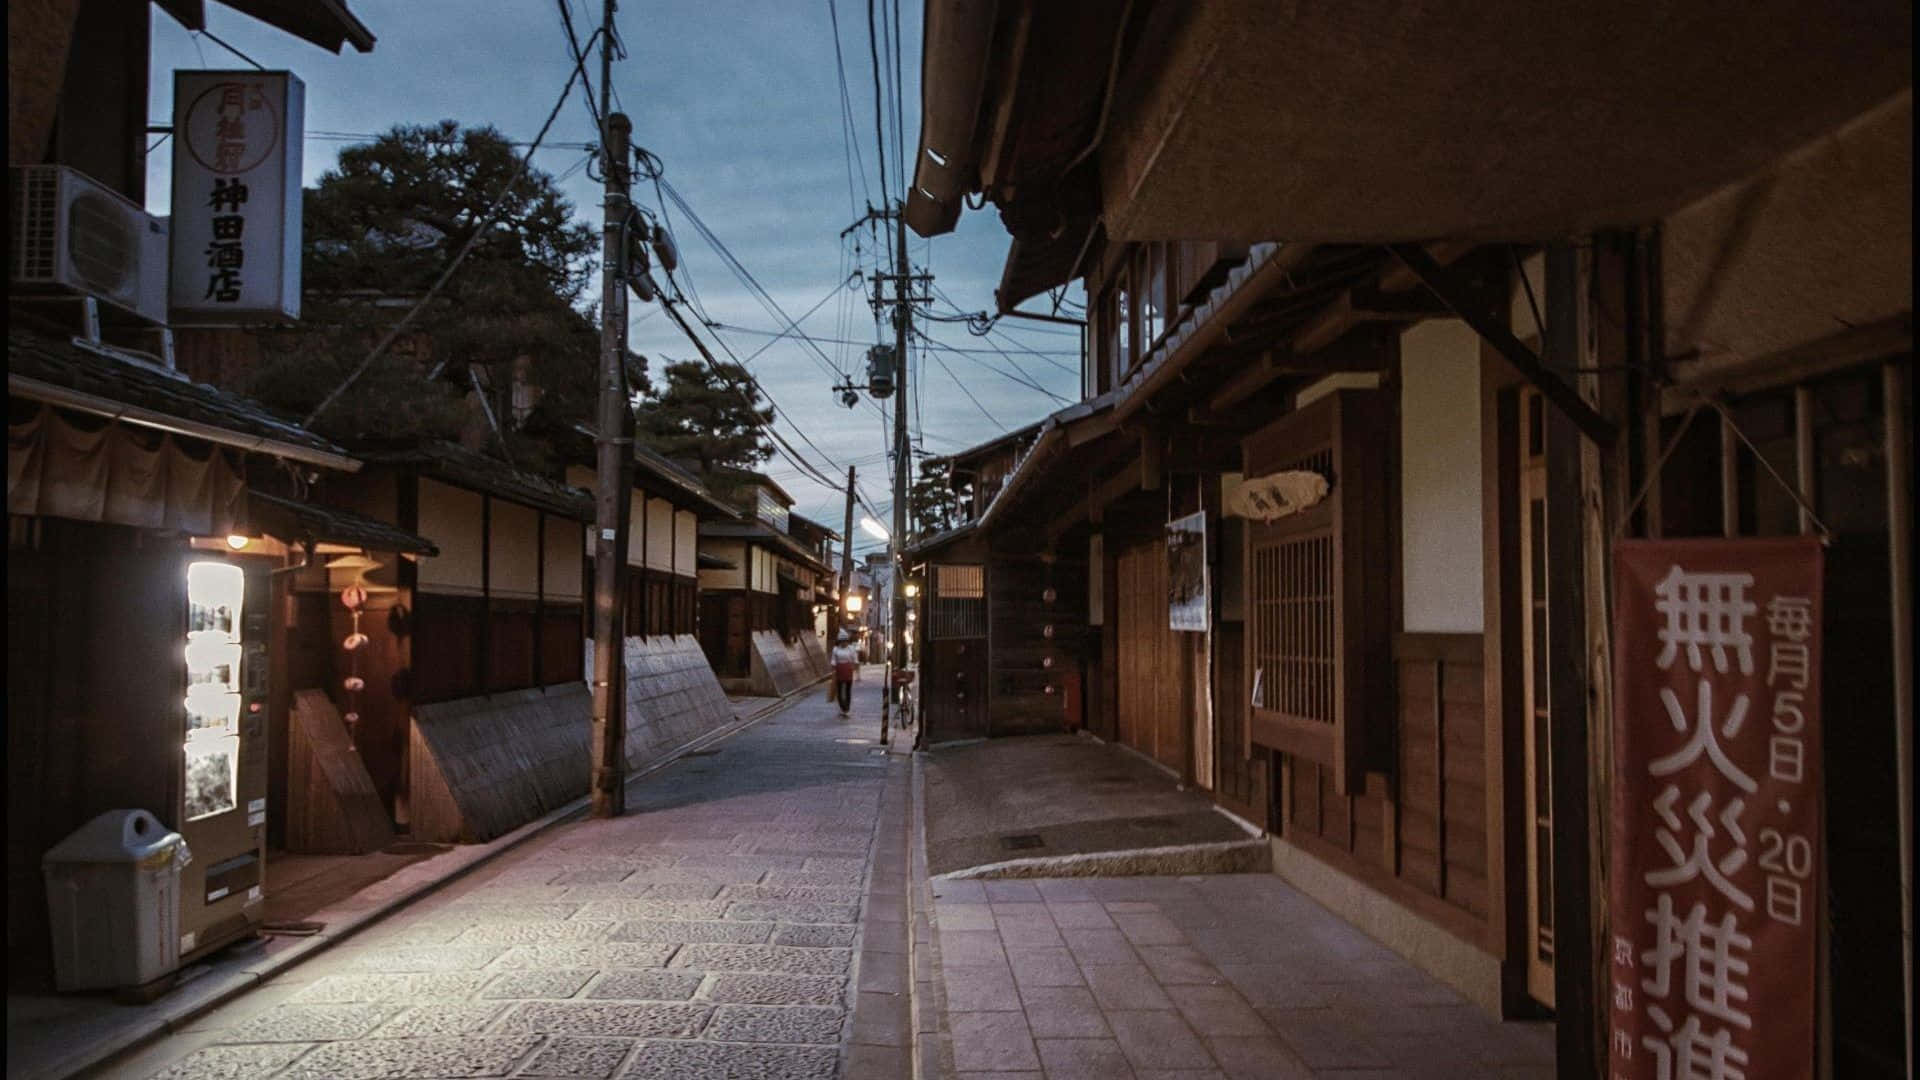 Casastradicionales Japonesas De Fondo En El Camino